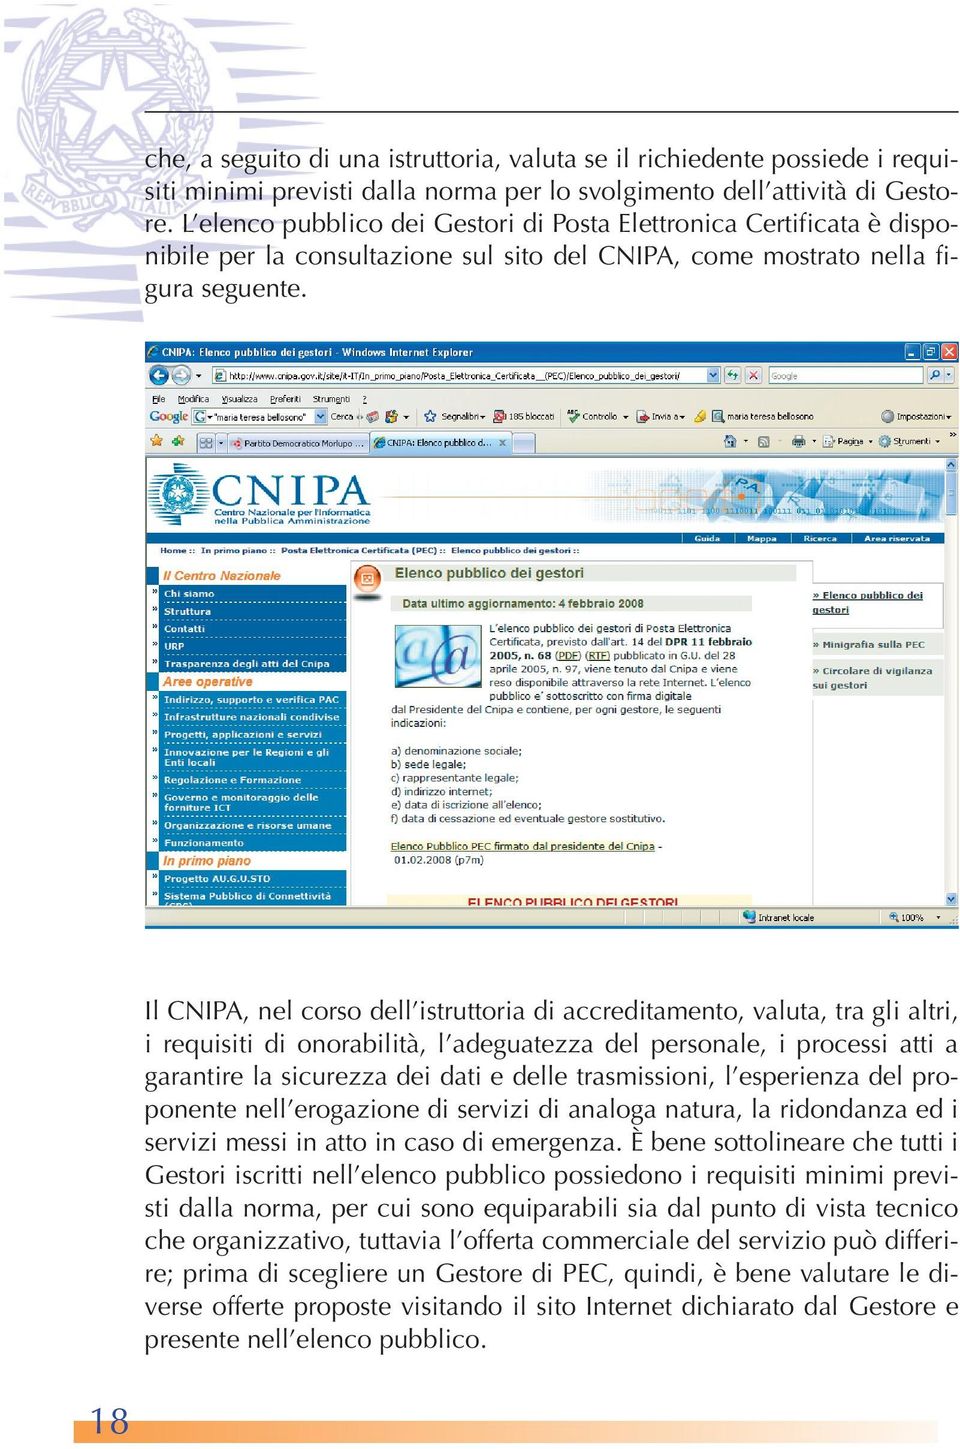 Il CNIPA, nel corso dell istruttoria di accreditamento, valuta, tra gli altri, i requisiti di onorabilità, l adeguatezza del personale, i processi atti a garantire la sicurezza dei dati e delle